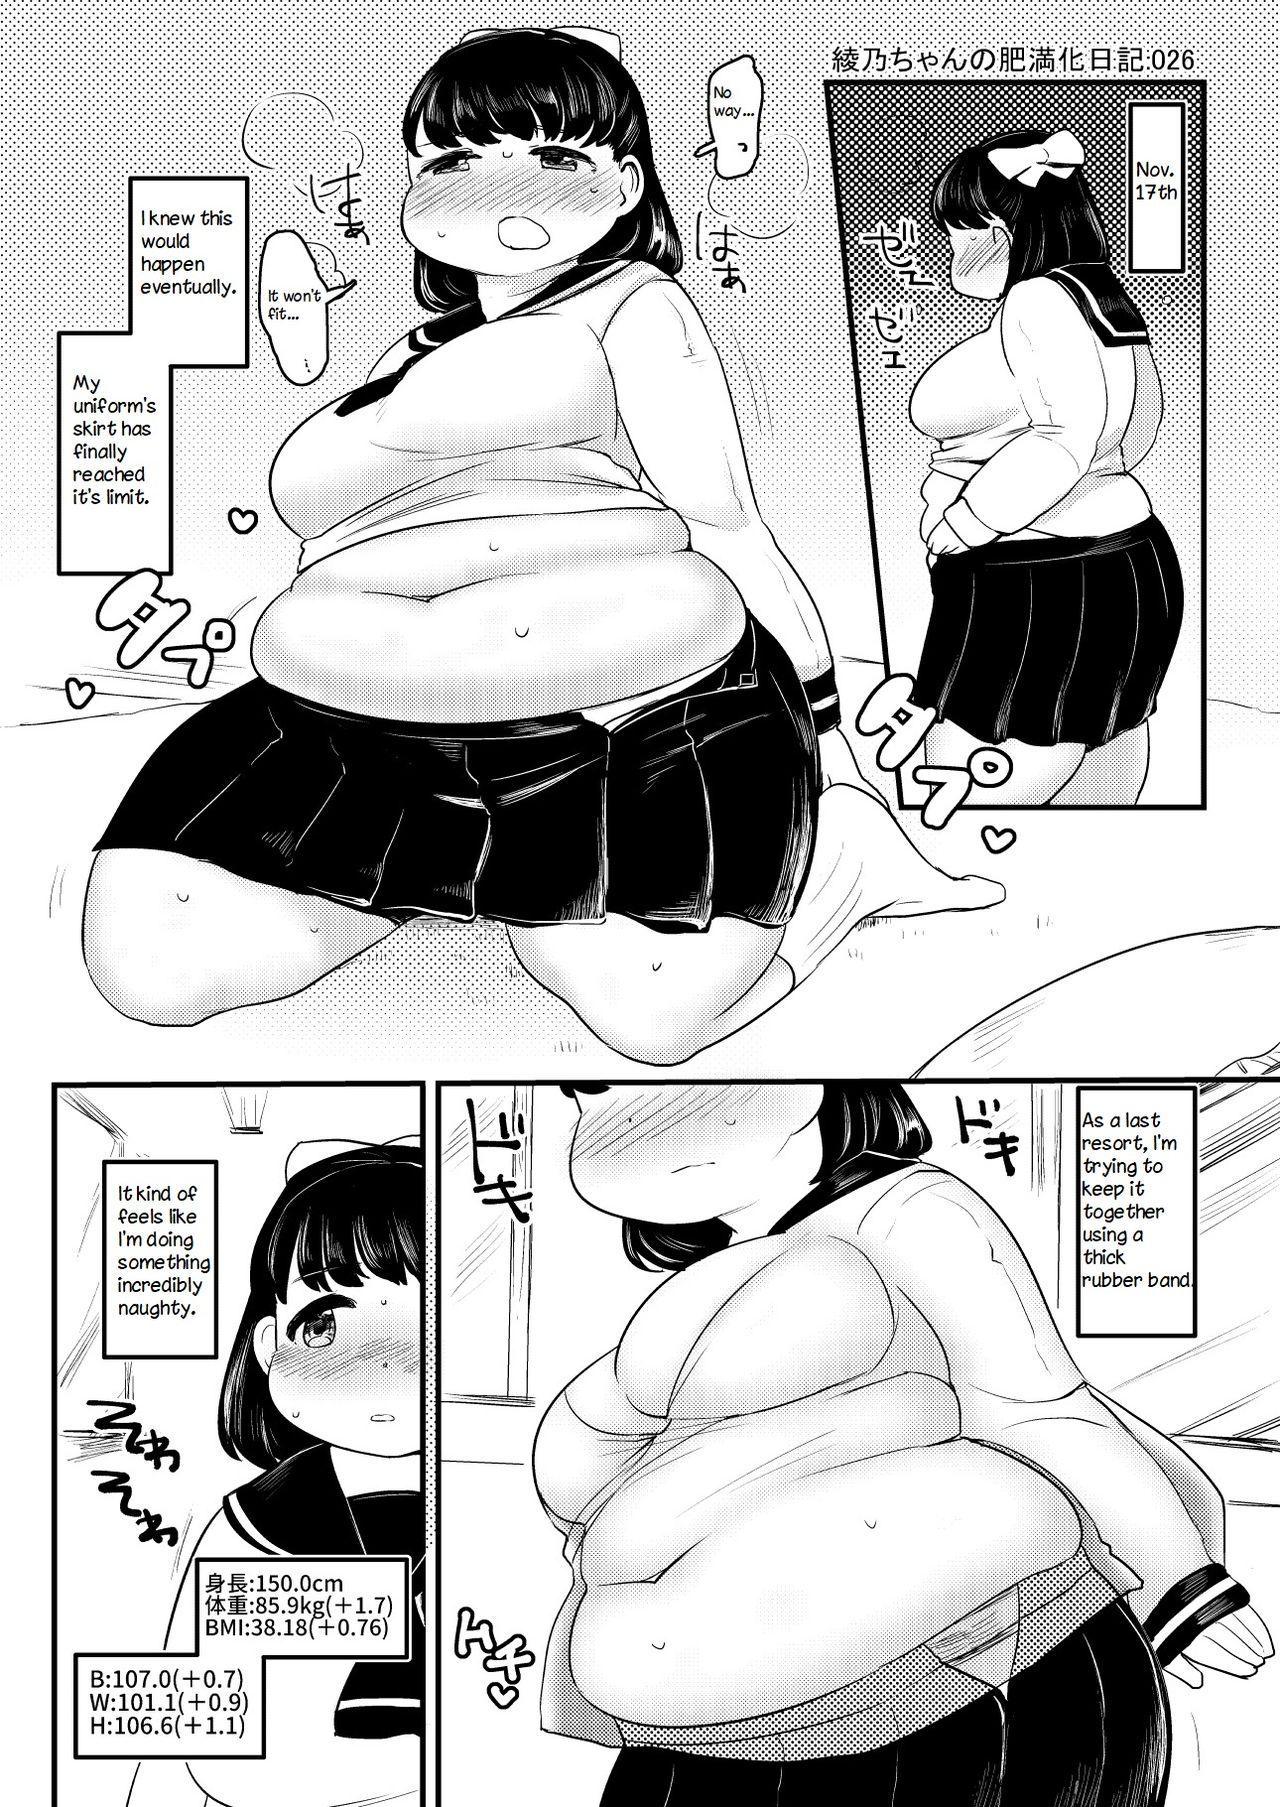 Ayano's Weight Gain Diary 26